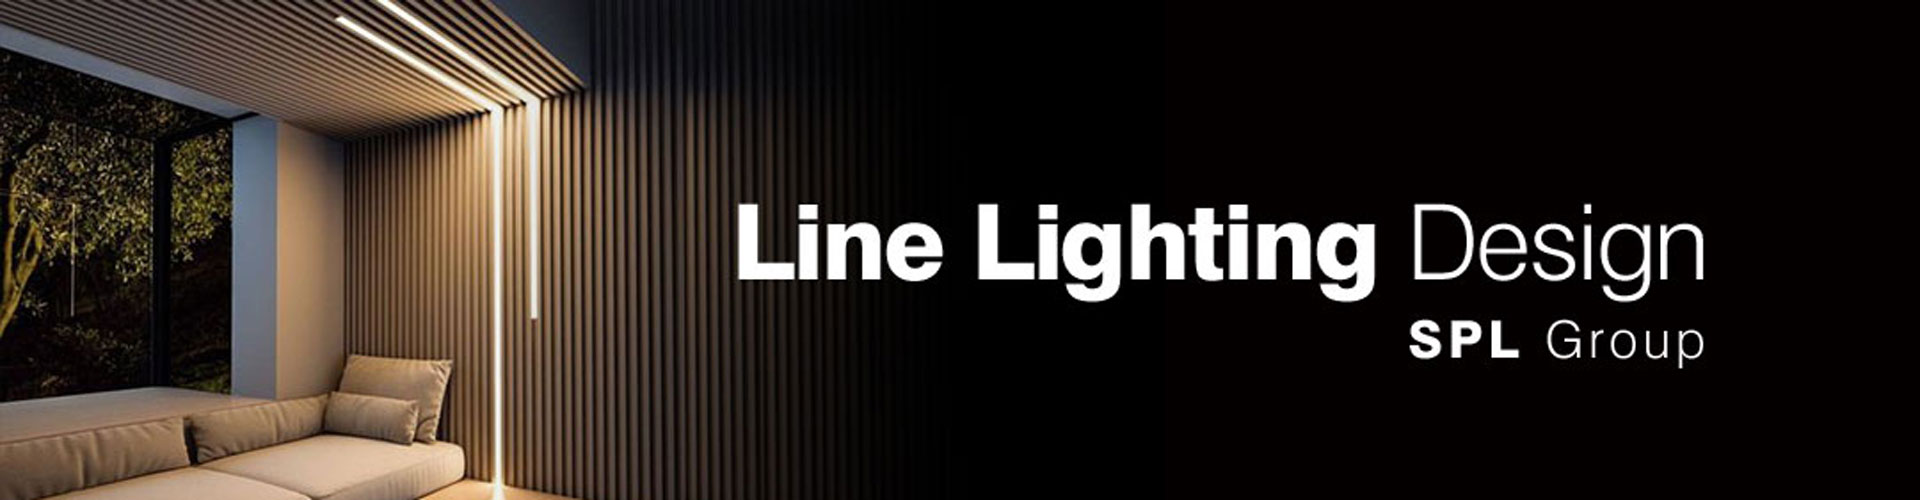 line lighting-slider.jpg